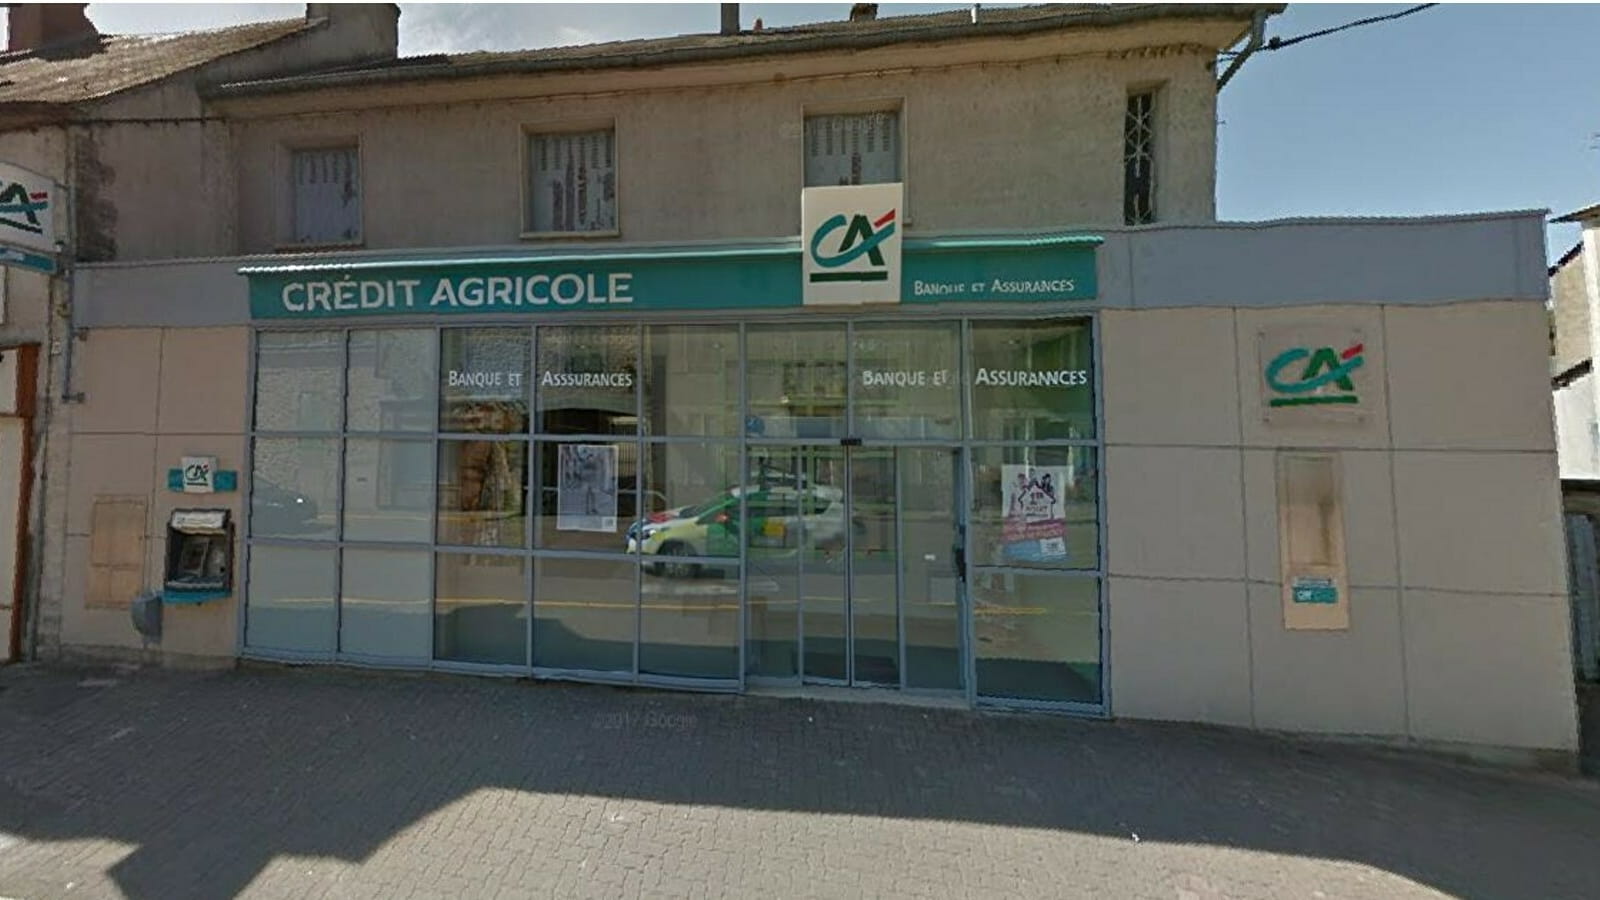 Crédit Agricole Centre Loire